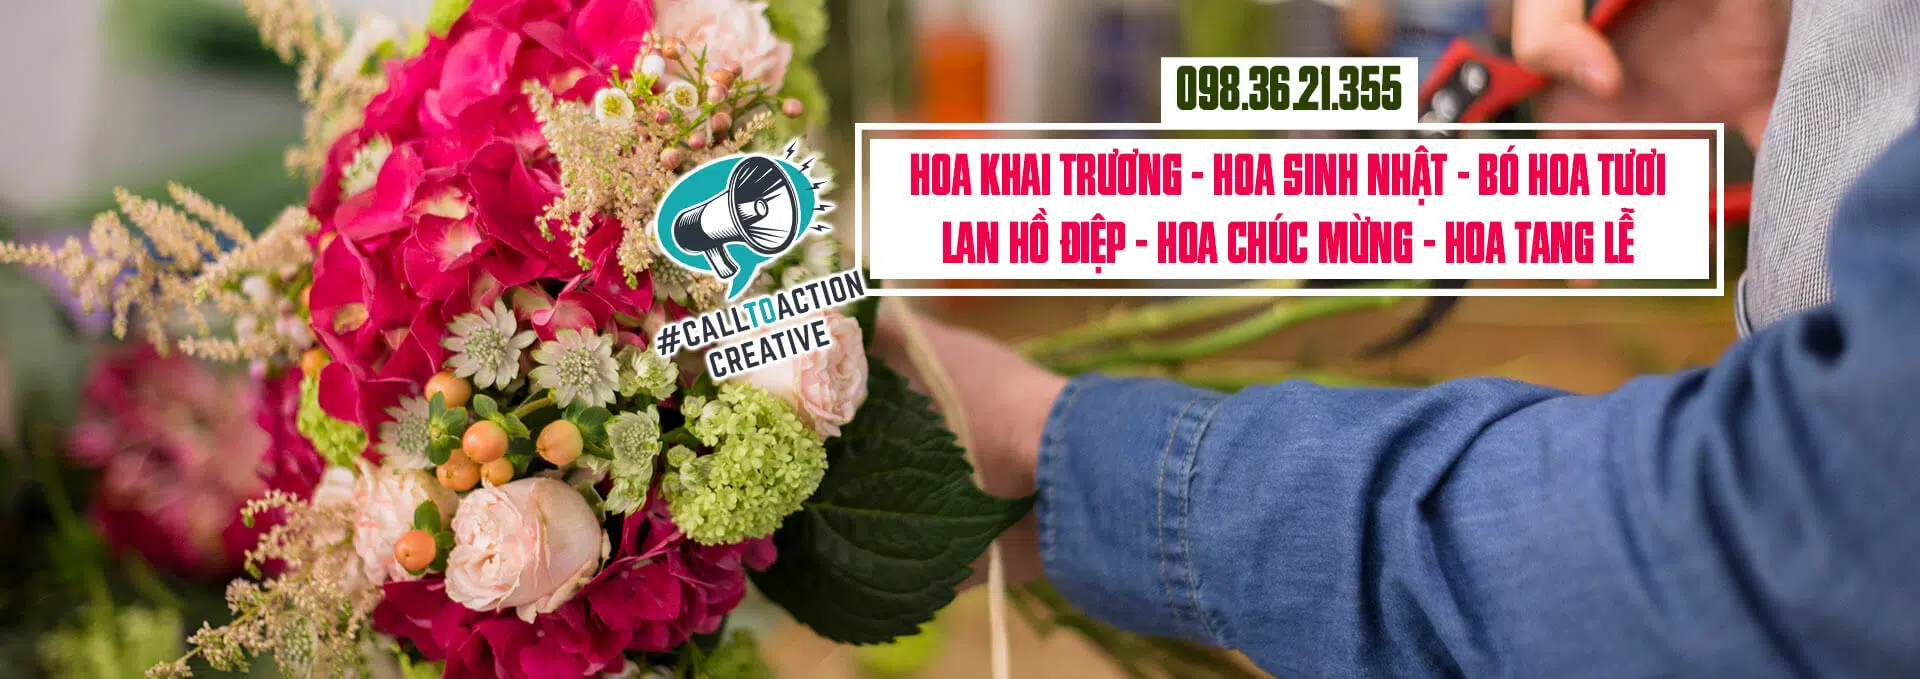 Điện hoa hà nội  Shop hoa tươi hà nội  Dịch vụ điện hoa tại Hà Nội